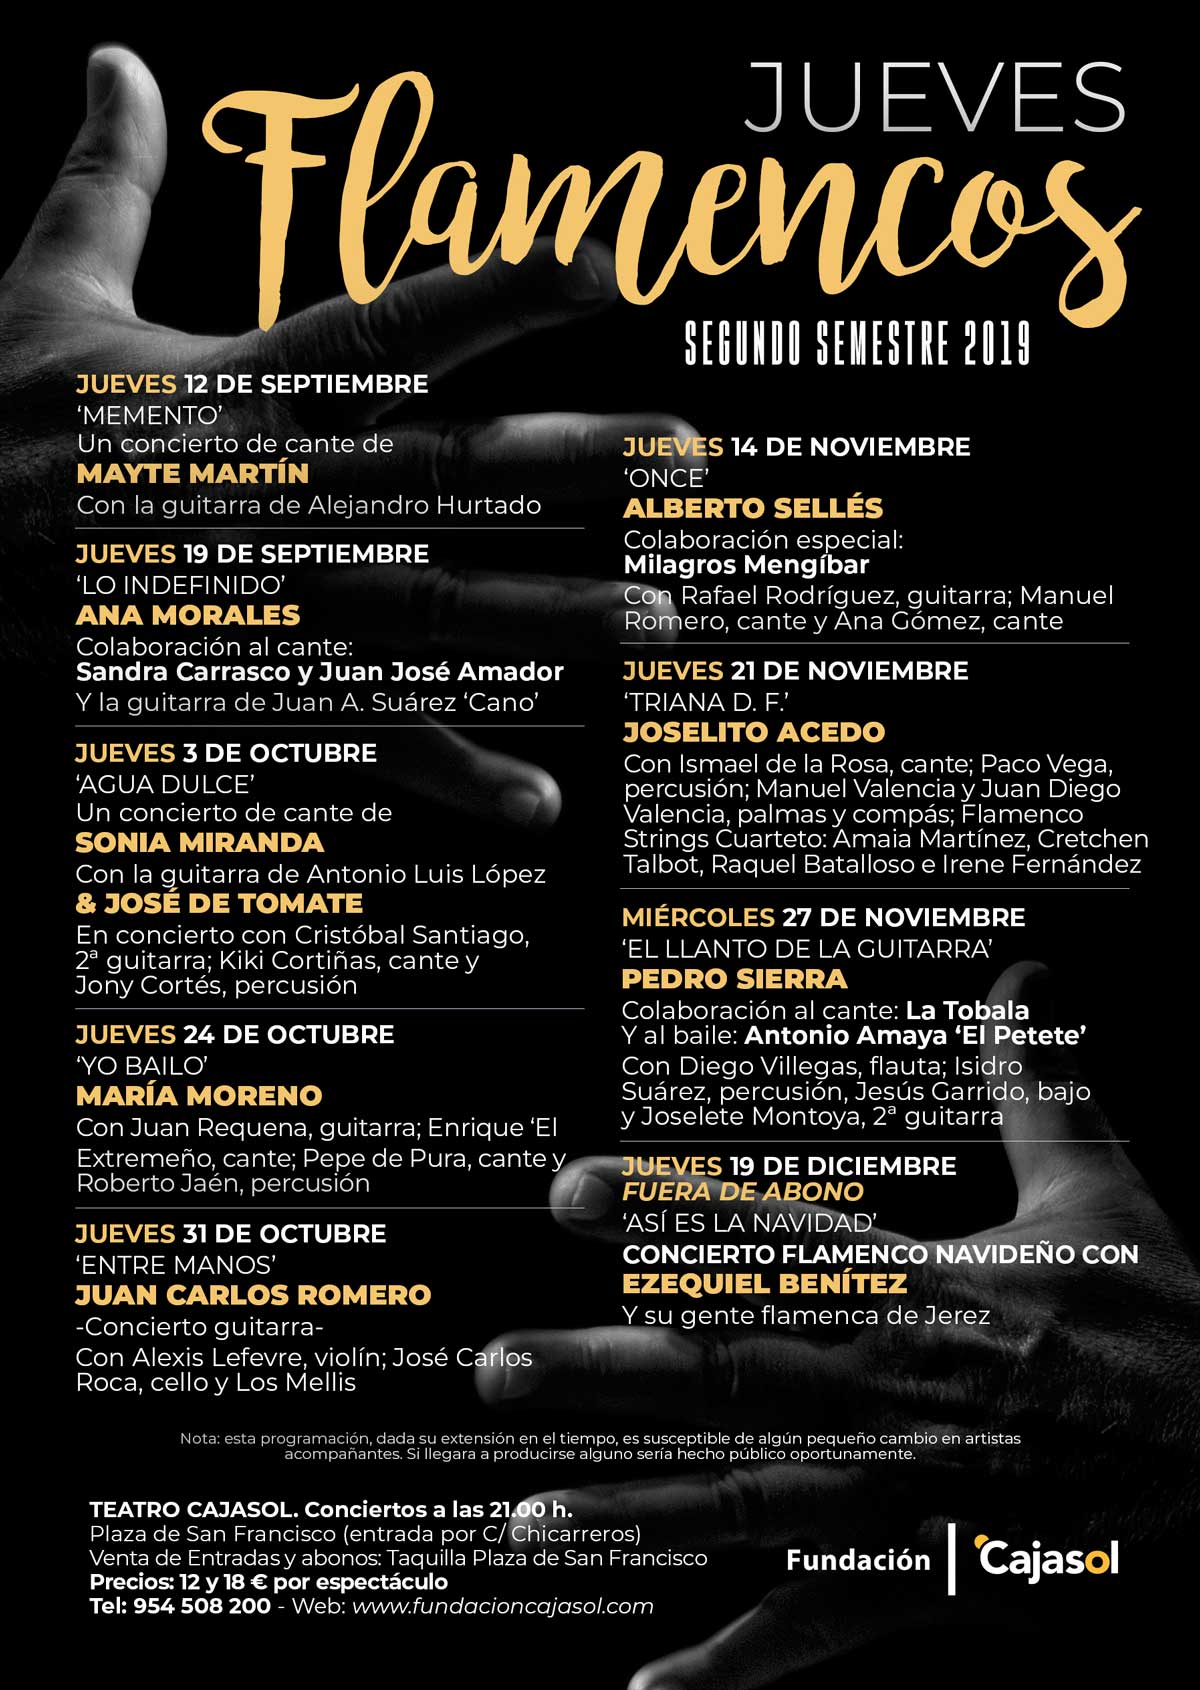 Cartel de los Jueves Flamencos 2019 en la Fundación Cajasol